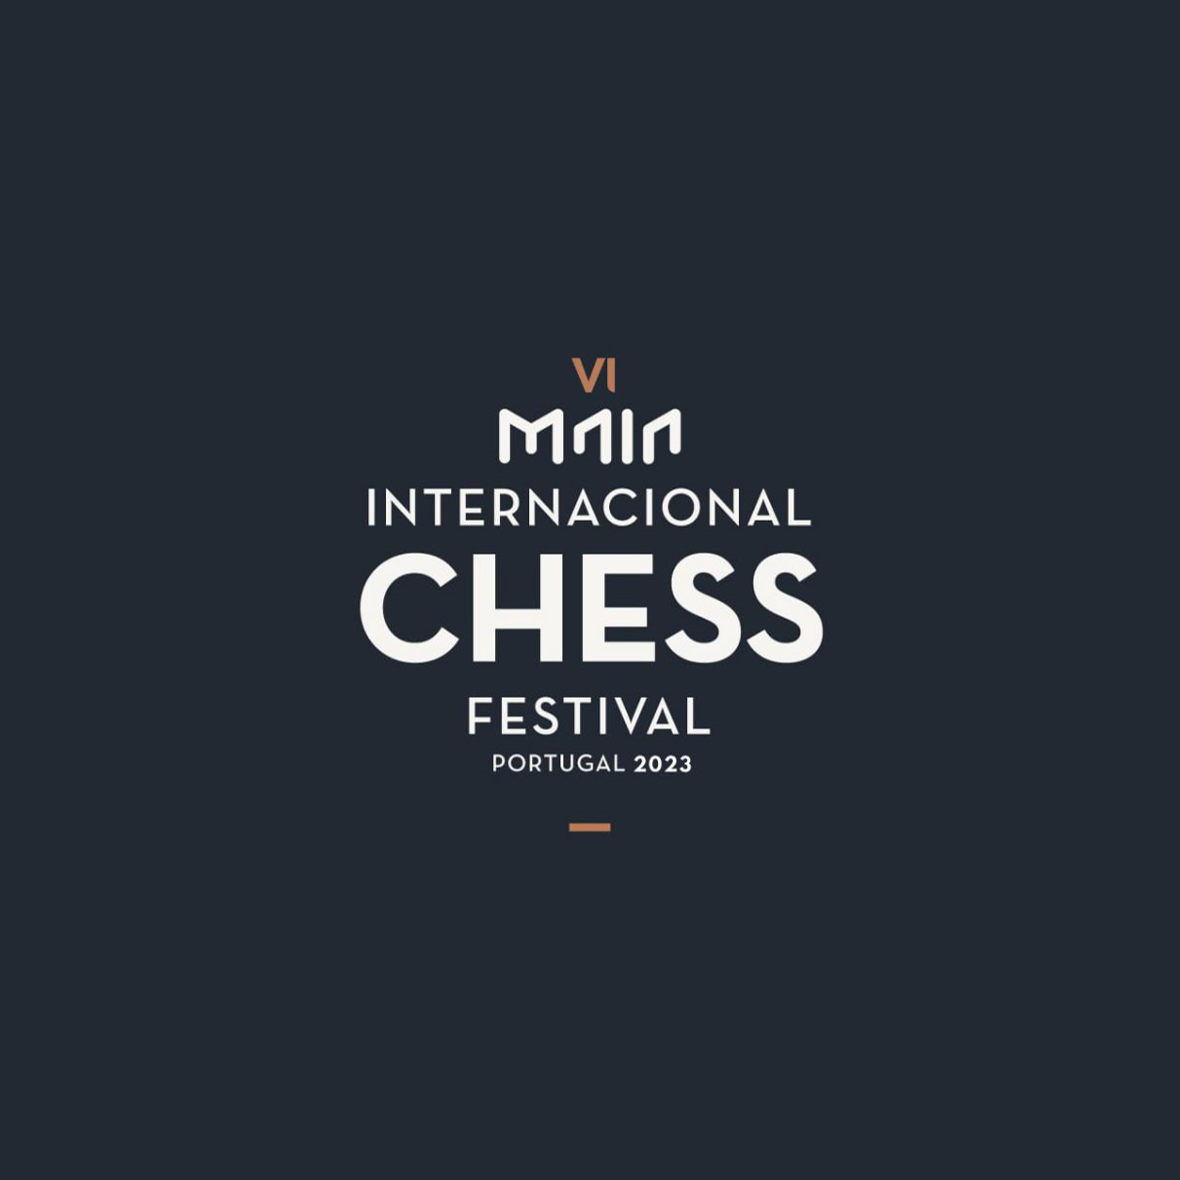 Festival Internacional de Xadrez da Maia começa hoje com torneio a